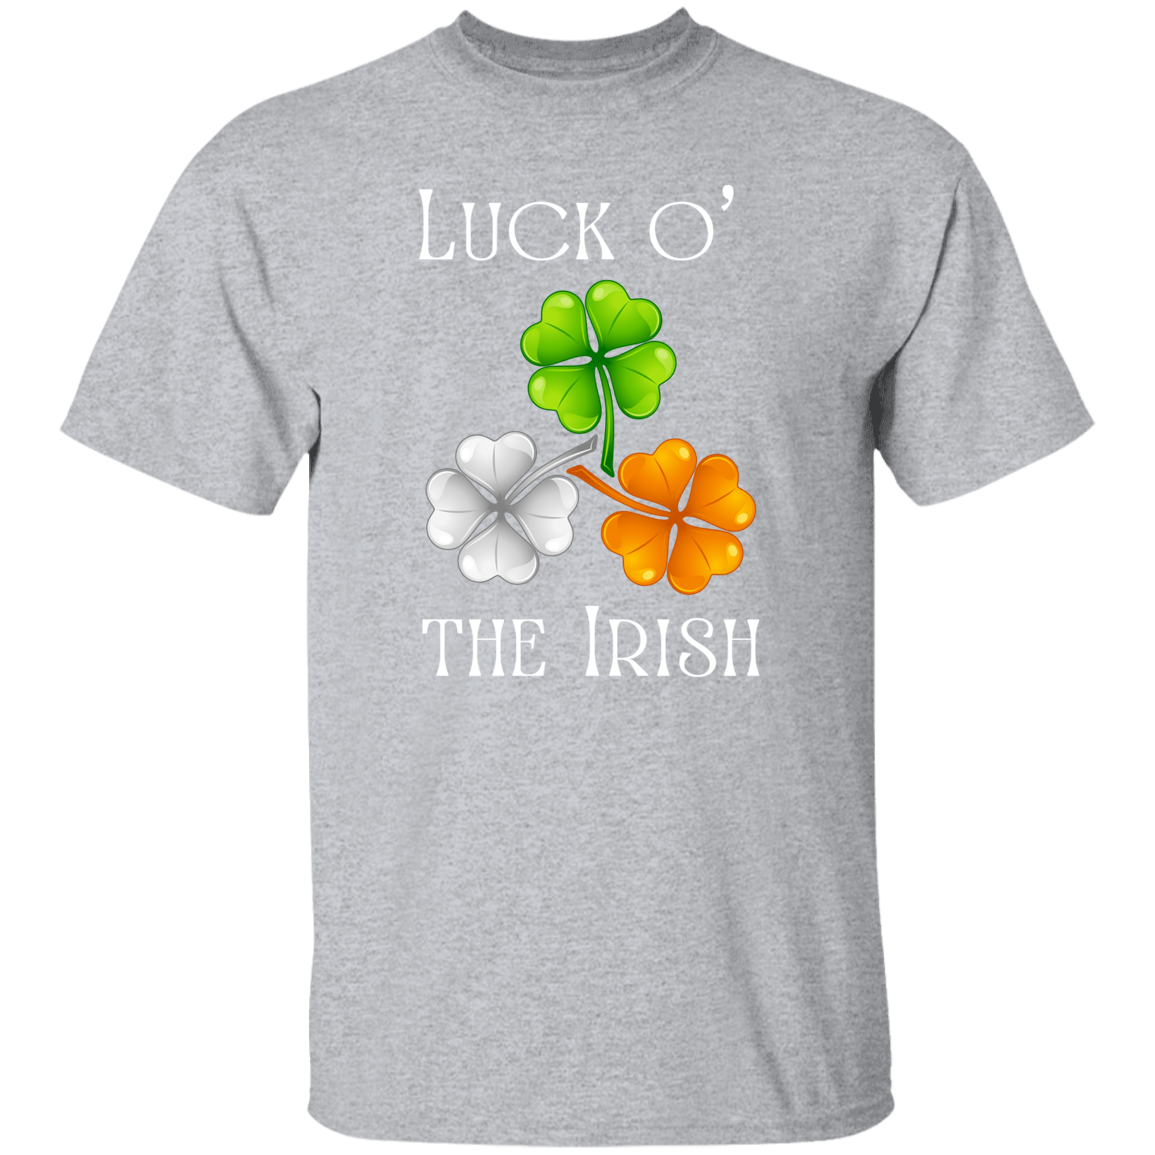 Luck o' the Irish Shamrock T-Shirt